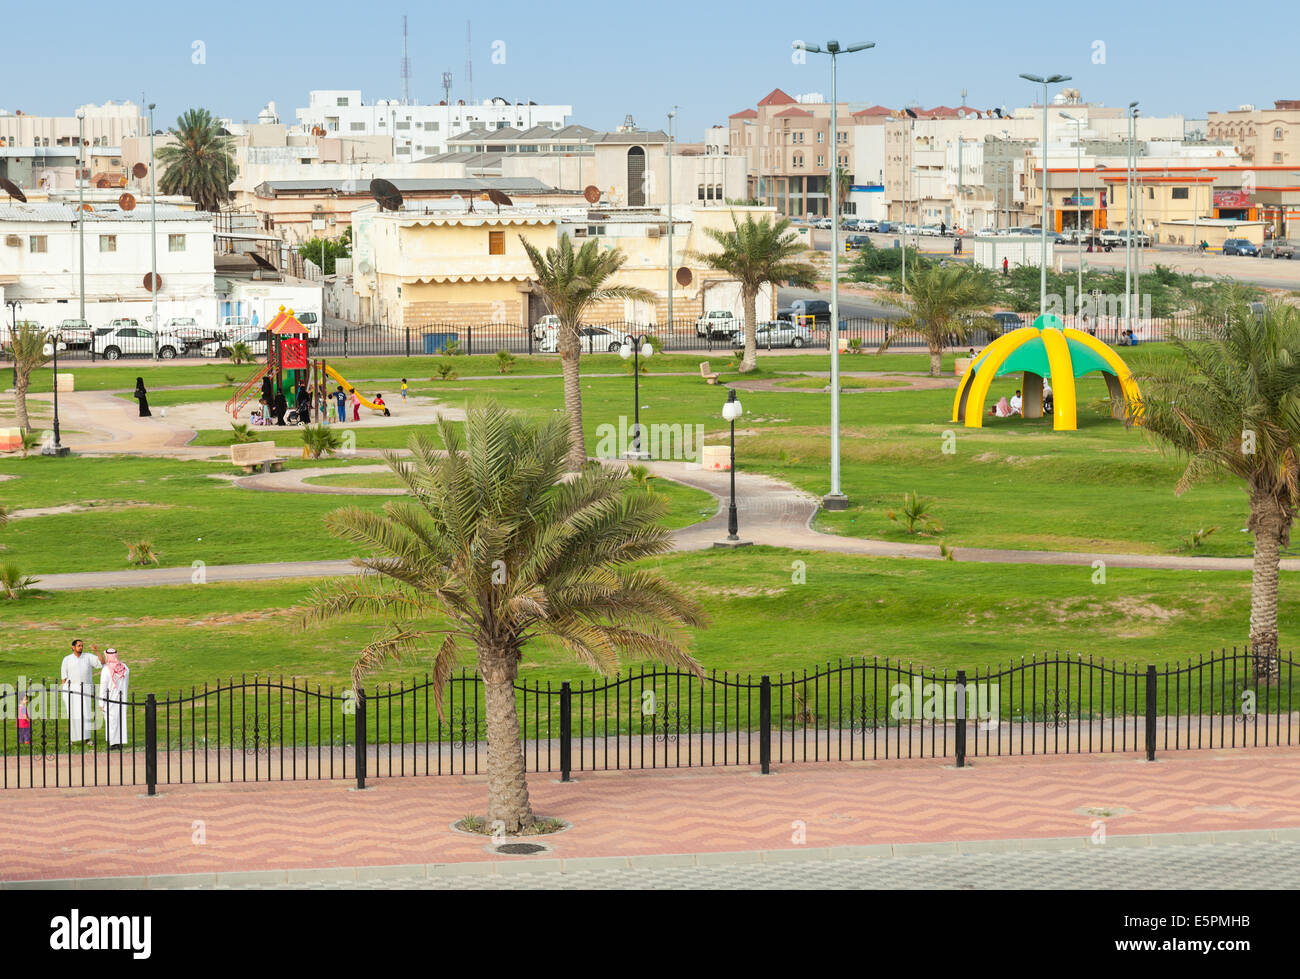 RAHIMA, Arabia Saudita - 10 Maggio 2014: parco giochi con la gente comune, Arabia Saudita Foto Stock